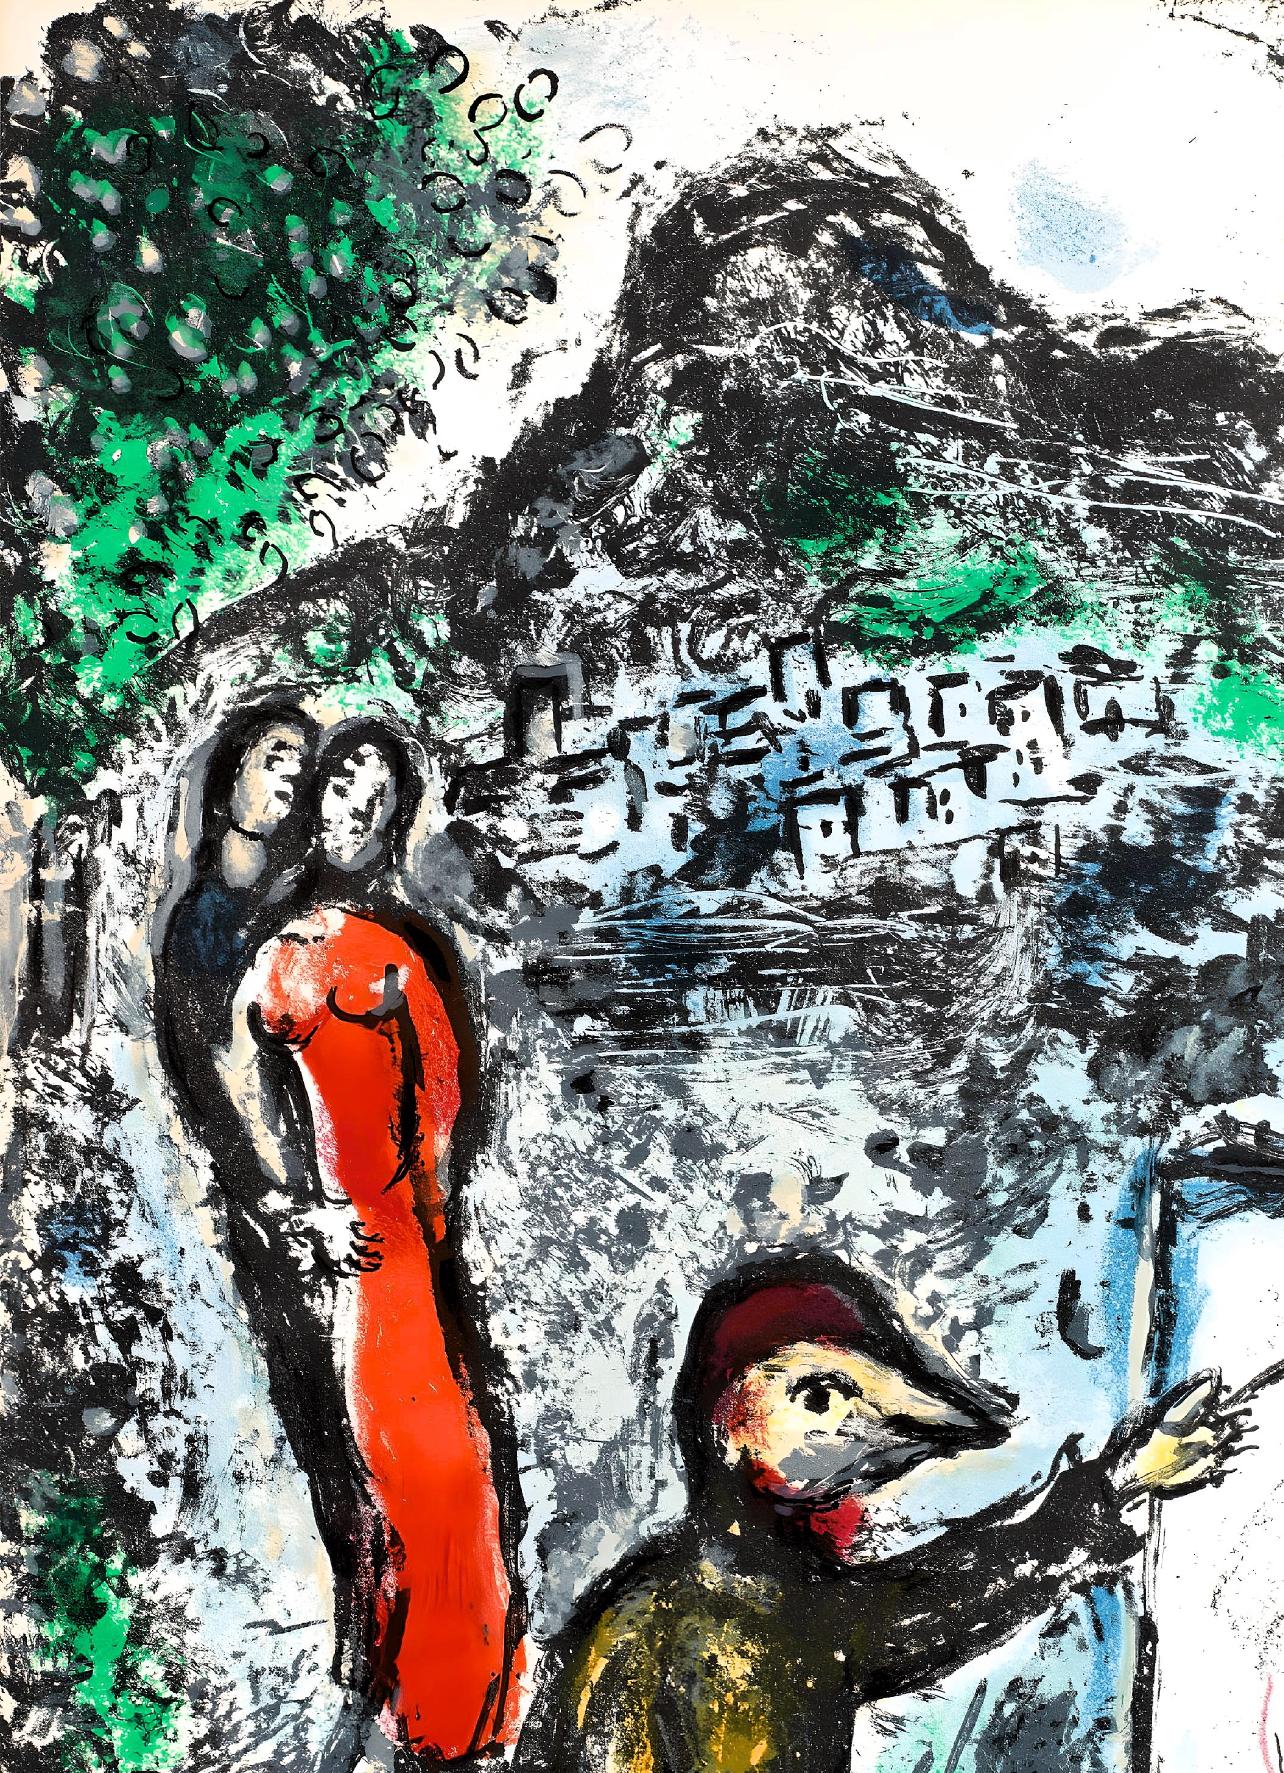 Originalausgabe Lithographie auf Velin. Aufschrift: unsigniert und nicht nummeriert, wie ausgegeben. Ausgezeichneter Zustand; nie gerahmt oder mattiert. Anmerkungen: Entnommen aus dem Band The Ceramics and Sculptures of Chagall, 1972. Herausgegeben